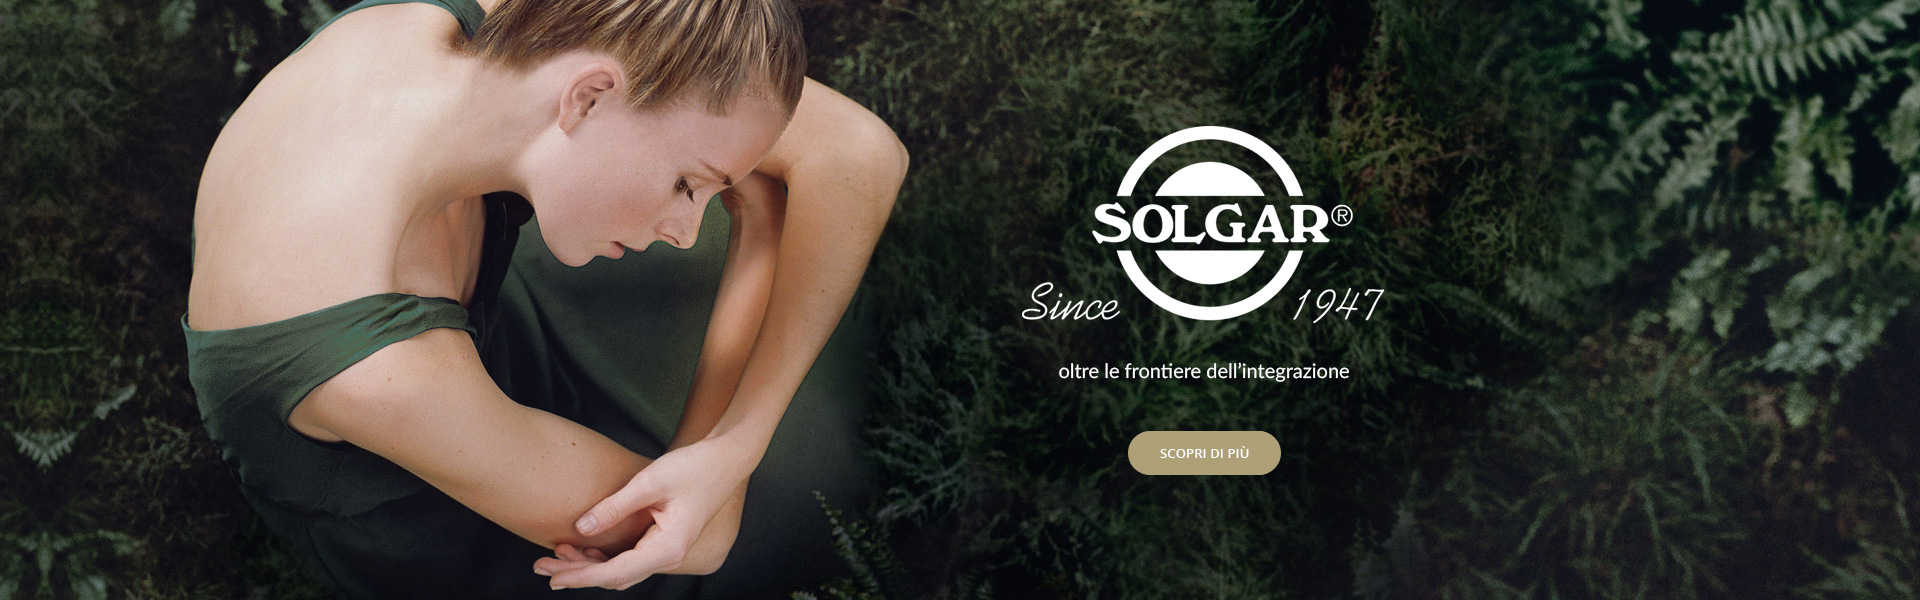 Solgar - Since 1947